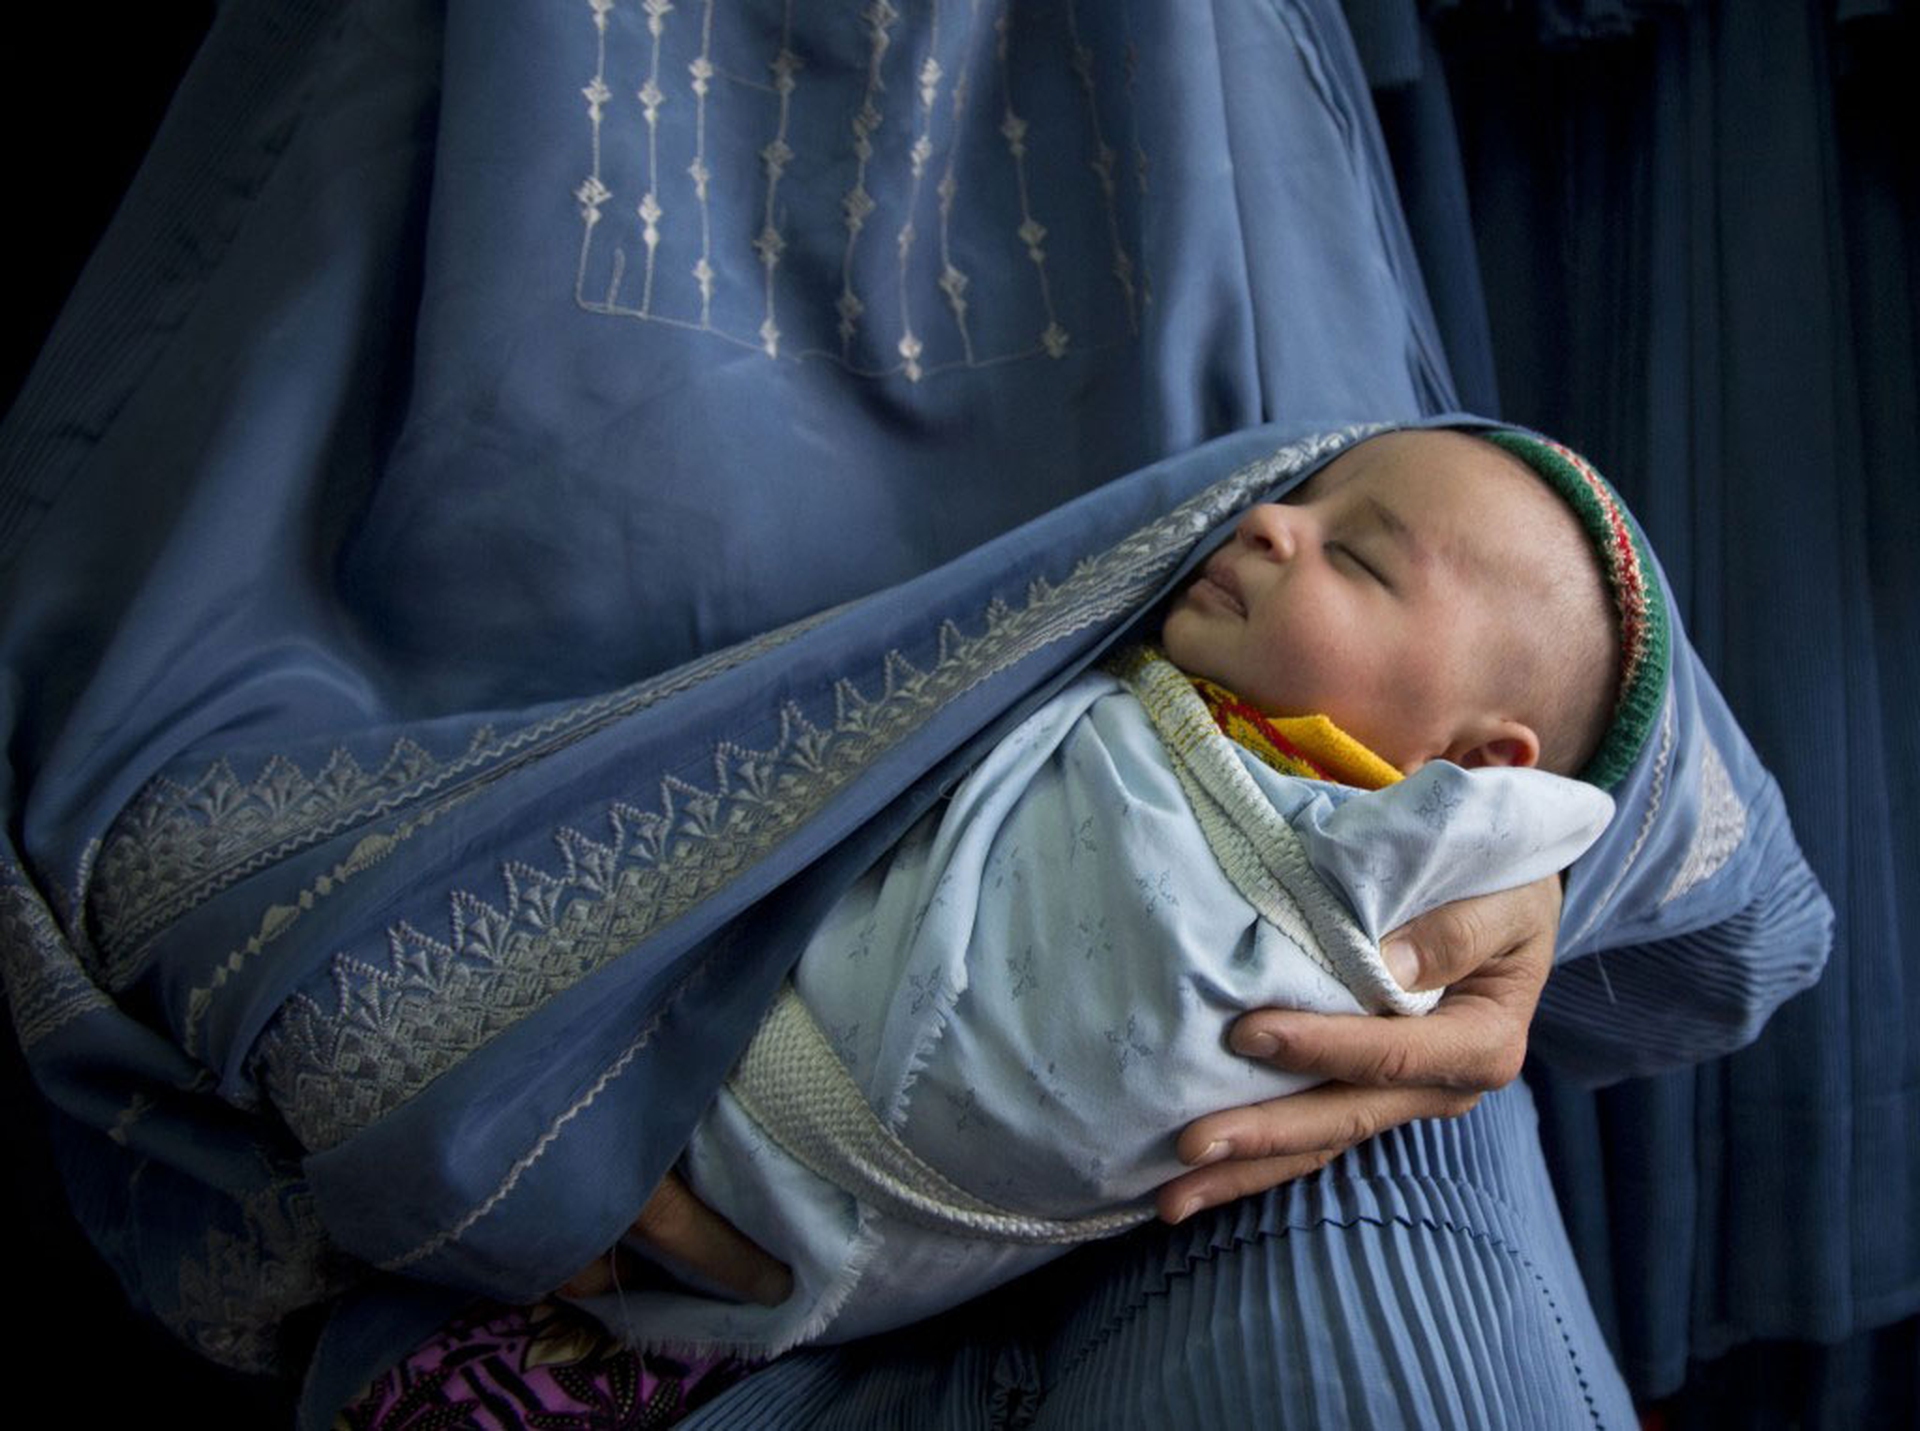 Мама сон исламский. Аня Нидрингхаус. Мусульманка с ребенком. Мусульманская женщина с ребенком. Мусульманка с малышом.